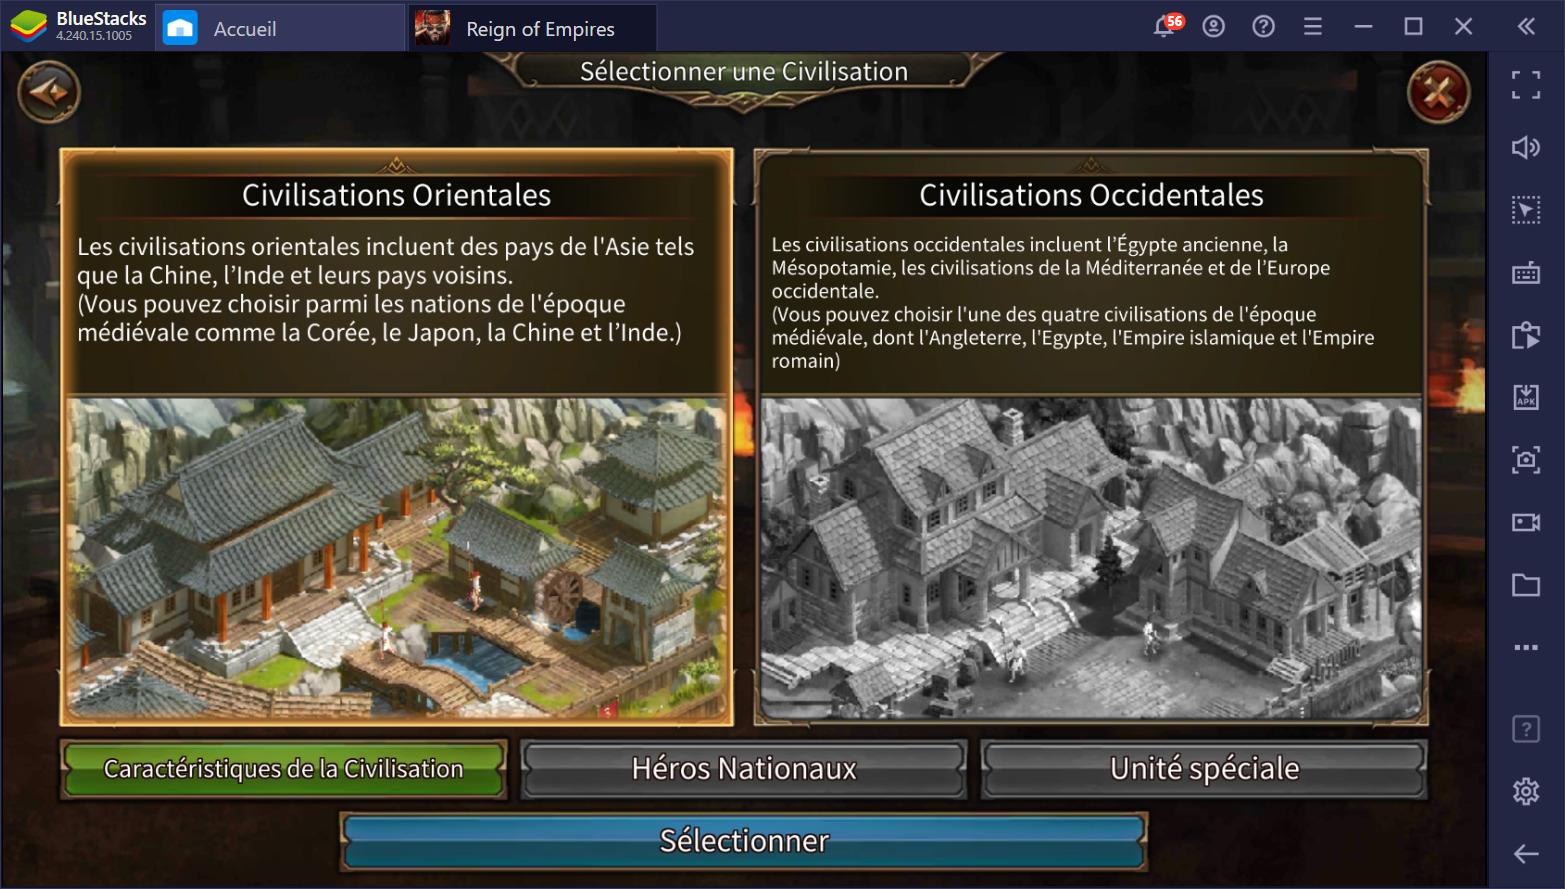 Jouer à Reign of Empires - Un RTS tactique aux batailles épiques disponible sur PC avec BlueStacks